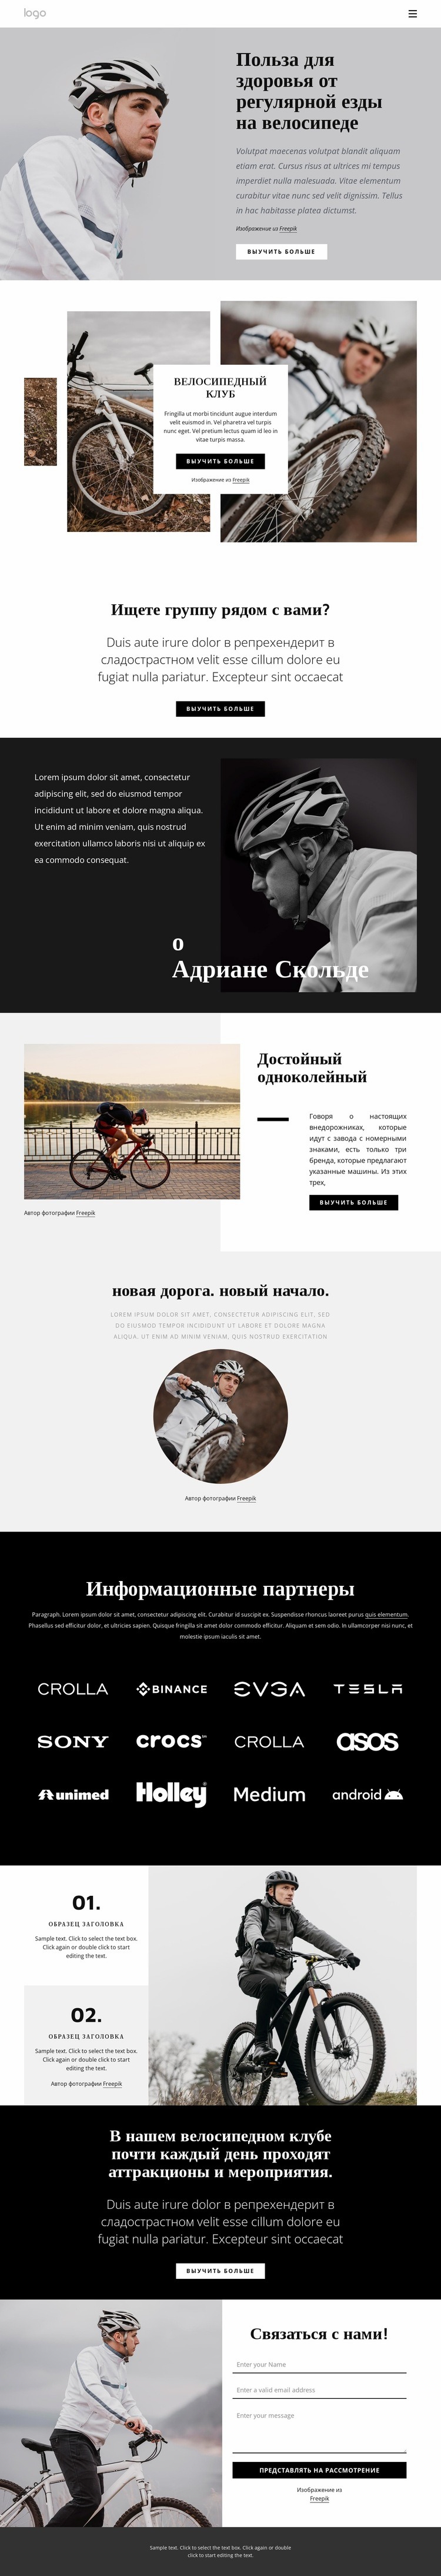 Преимущества регулярной езды на велосипеде Дизайн сайта